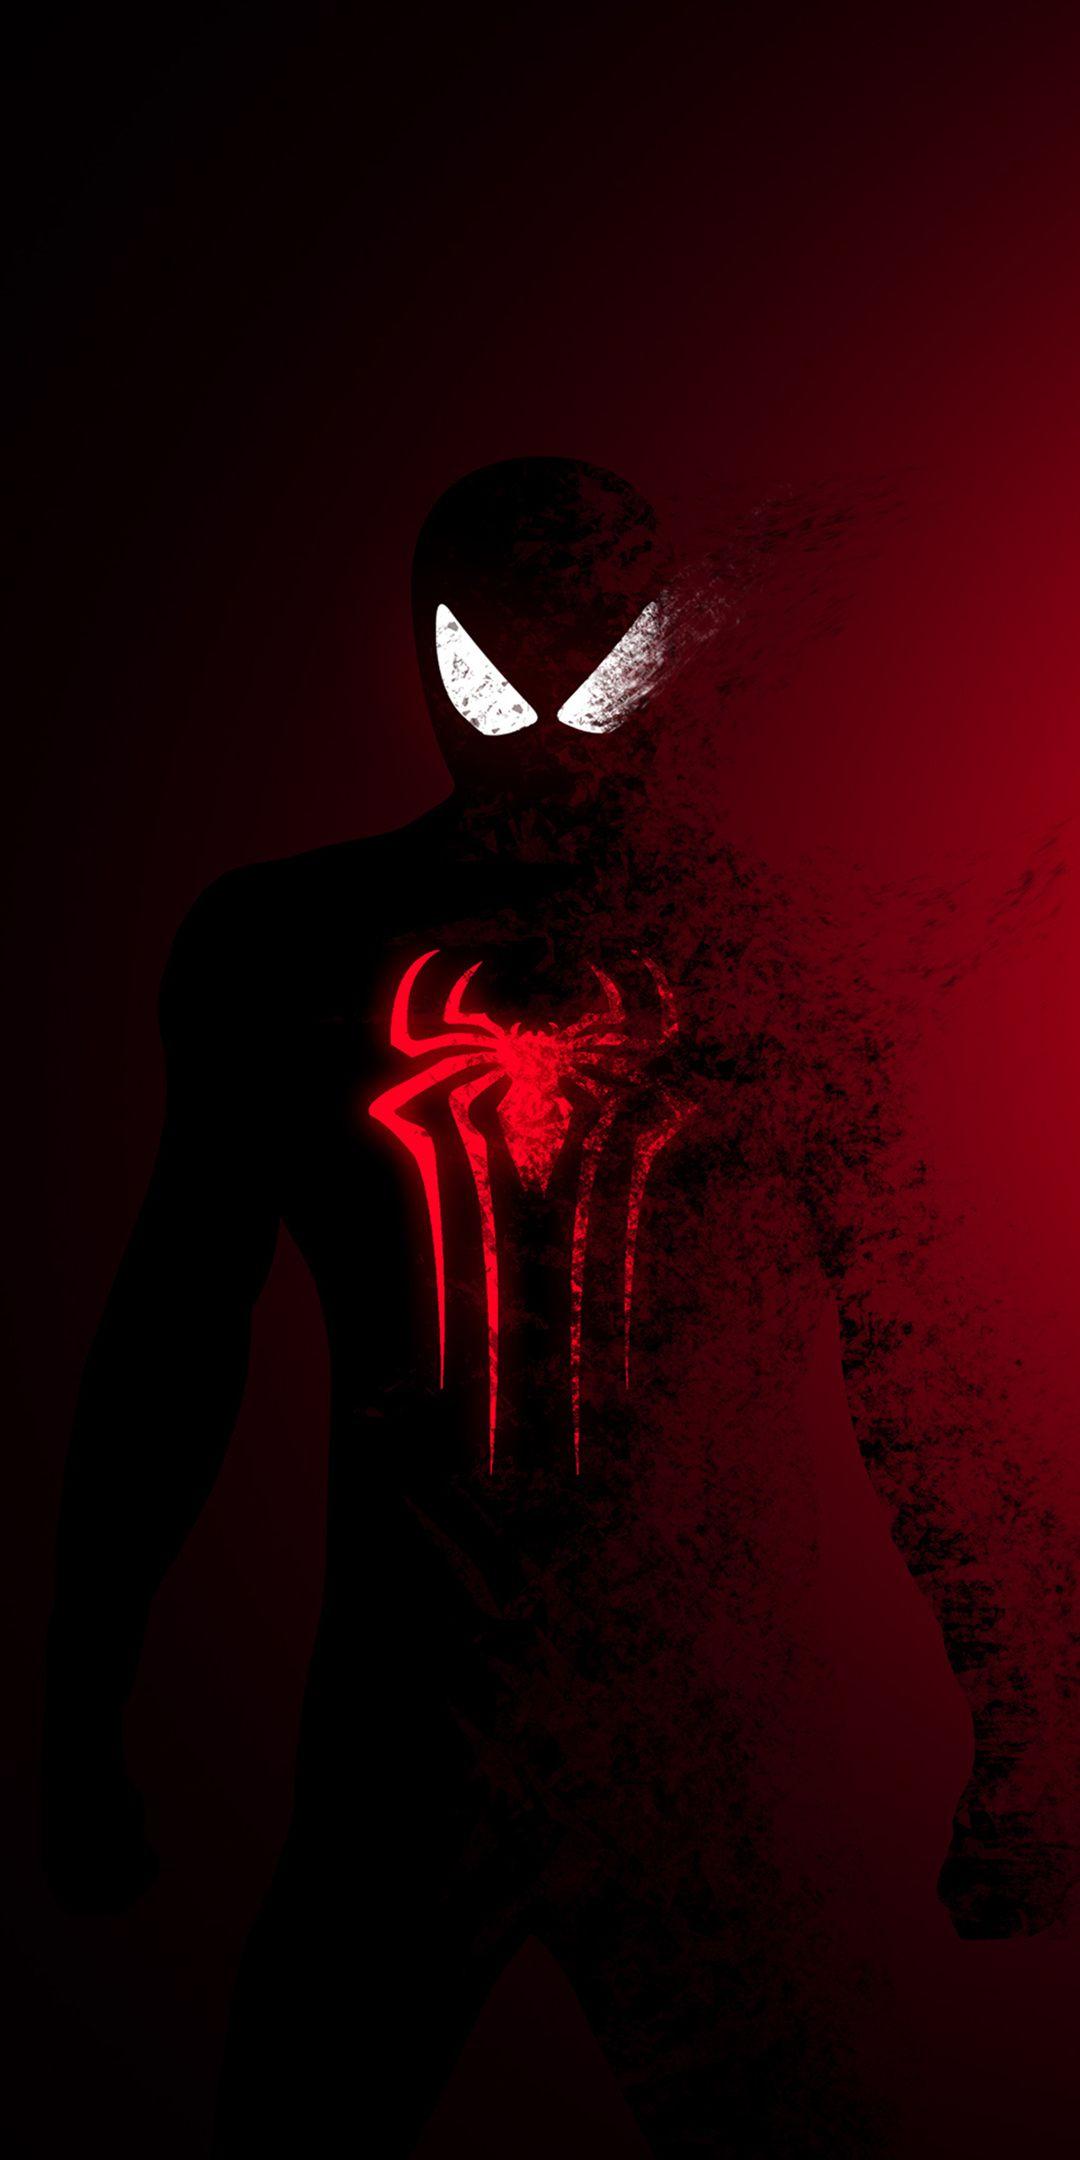 Spider Man, Spider Man: Far From Home, Dark Red